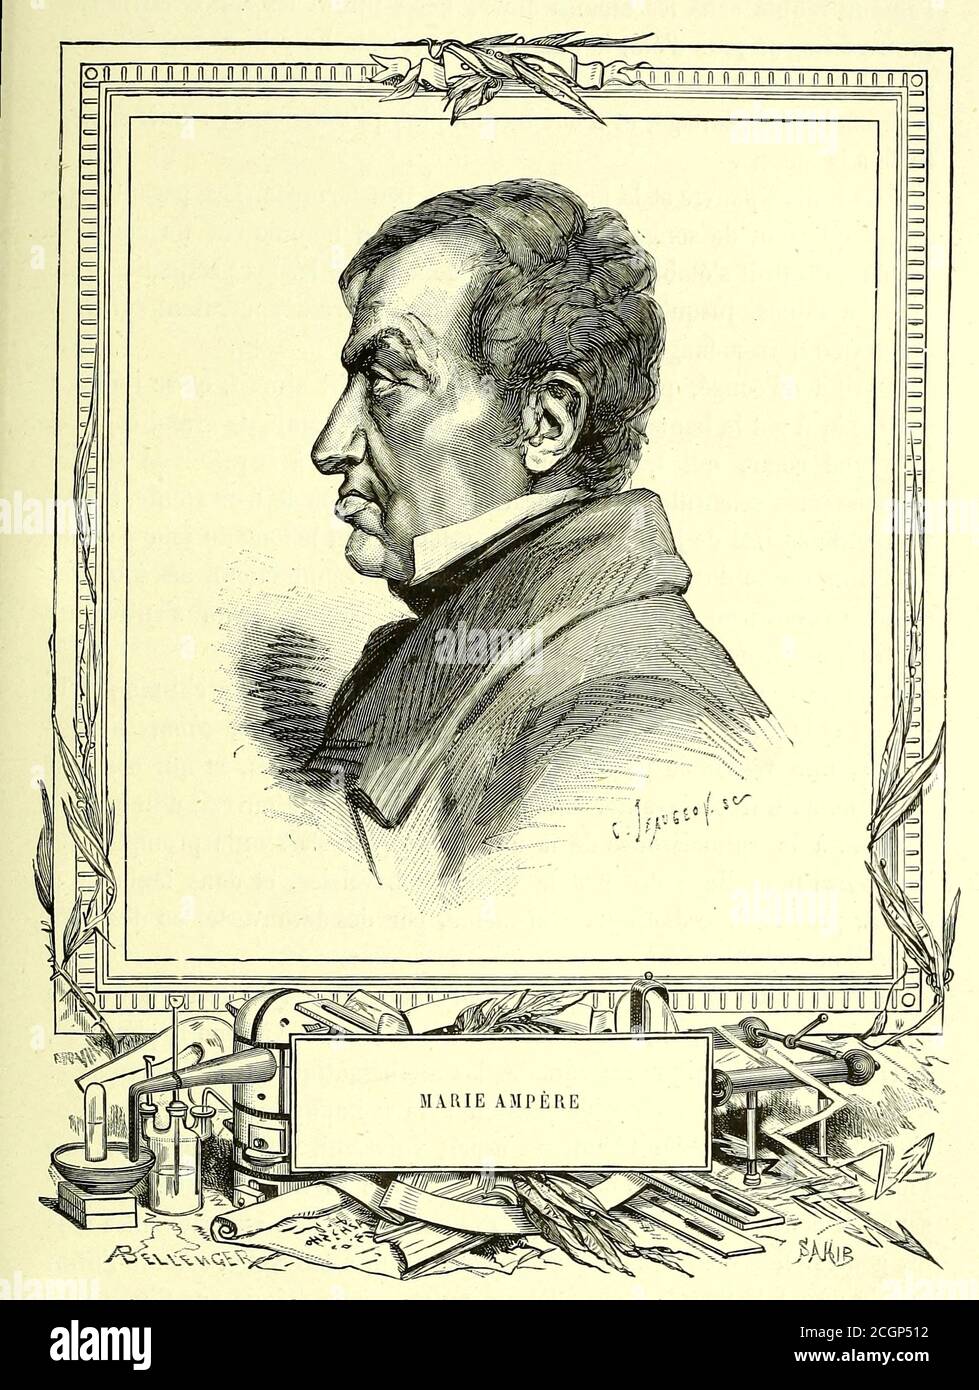 André-Marie Ampère (20 janvier 1775 – 10 juin 1836) était un physicien et mathématicien français, l'un des fondateurs de la science de l'électromagnétisme classique, qu'il a appelée « électrodynamique ». Il est également l'inventeur de nombreuses applications, comme le solénoïde (un terme inventé par lui) et le télégraphe électrique. Autodidacte, Ampère était membre de l'Académie des Sciences et professeur à l'École polytechnique et au Collège de France. L'unité si de mesure du courant électrique, l'ampère, est nommée d'après lui. Son nom est également l'un des 72 noms inscrits Banque D'Images